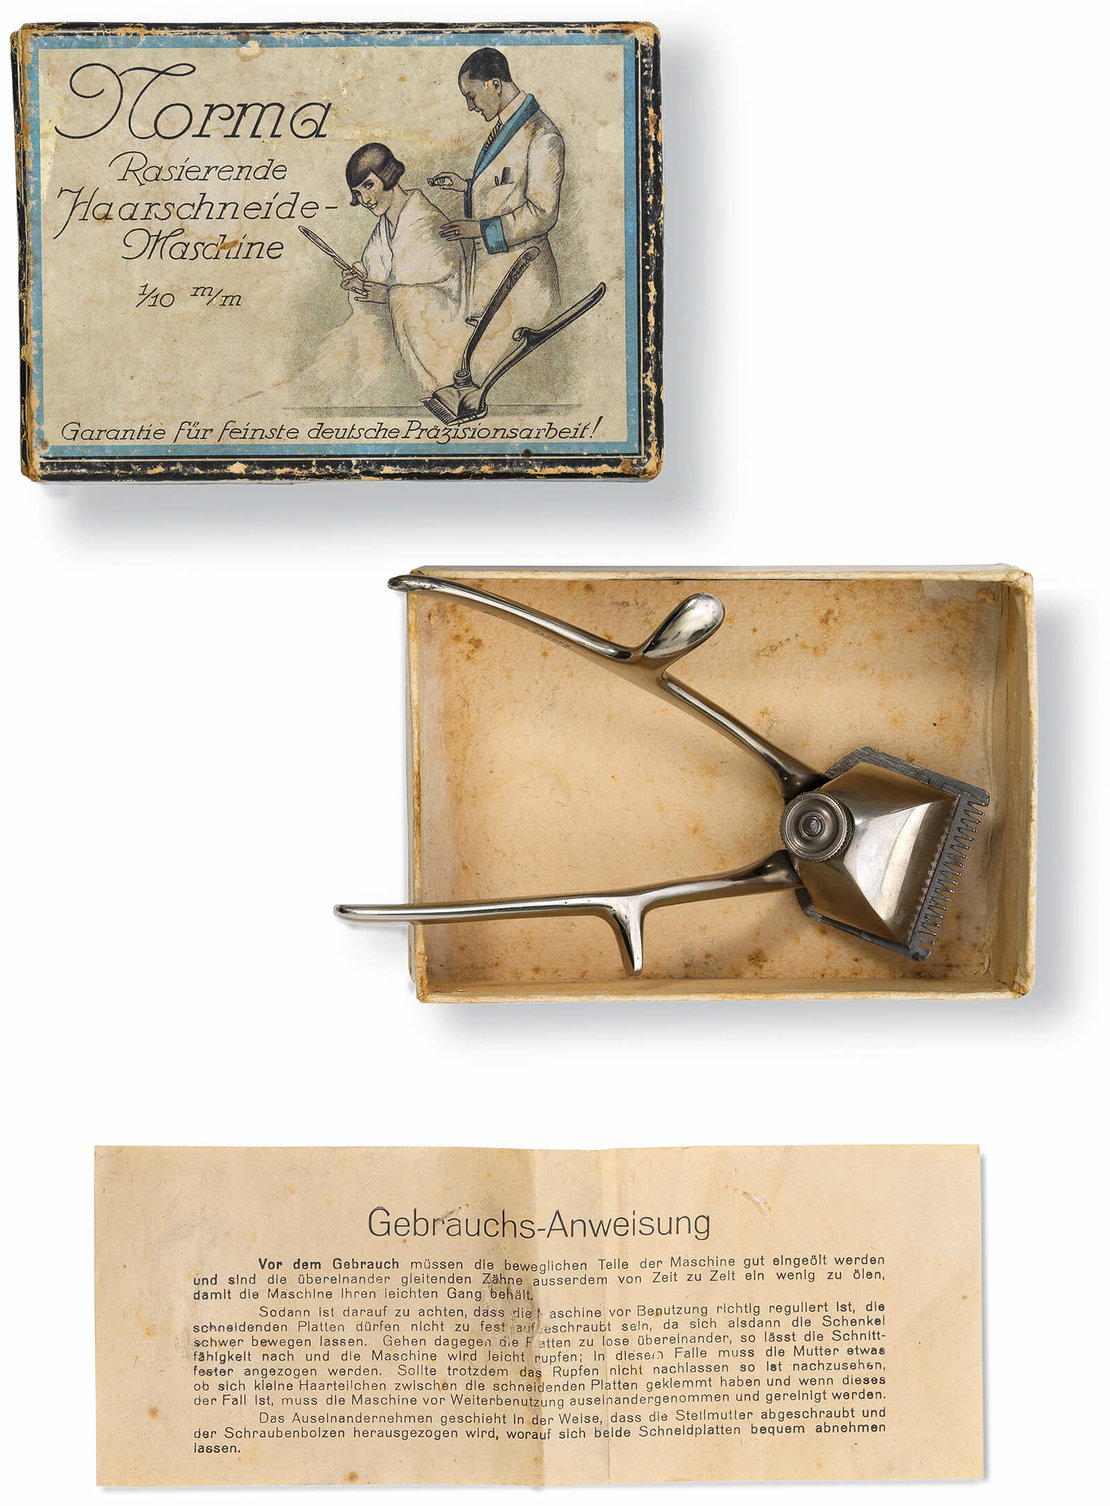 Haarschneidemaschine für Bubikopffrisuren, 1920er Jahre, Wien Museum, Inv.-Nr. M 18939 